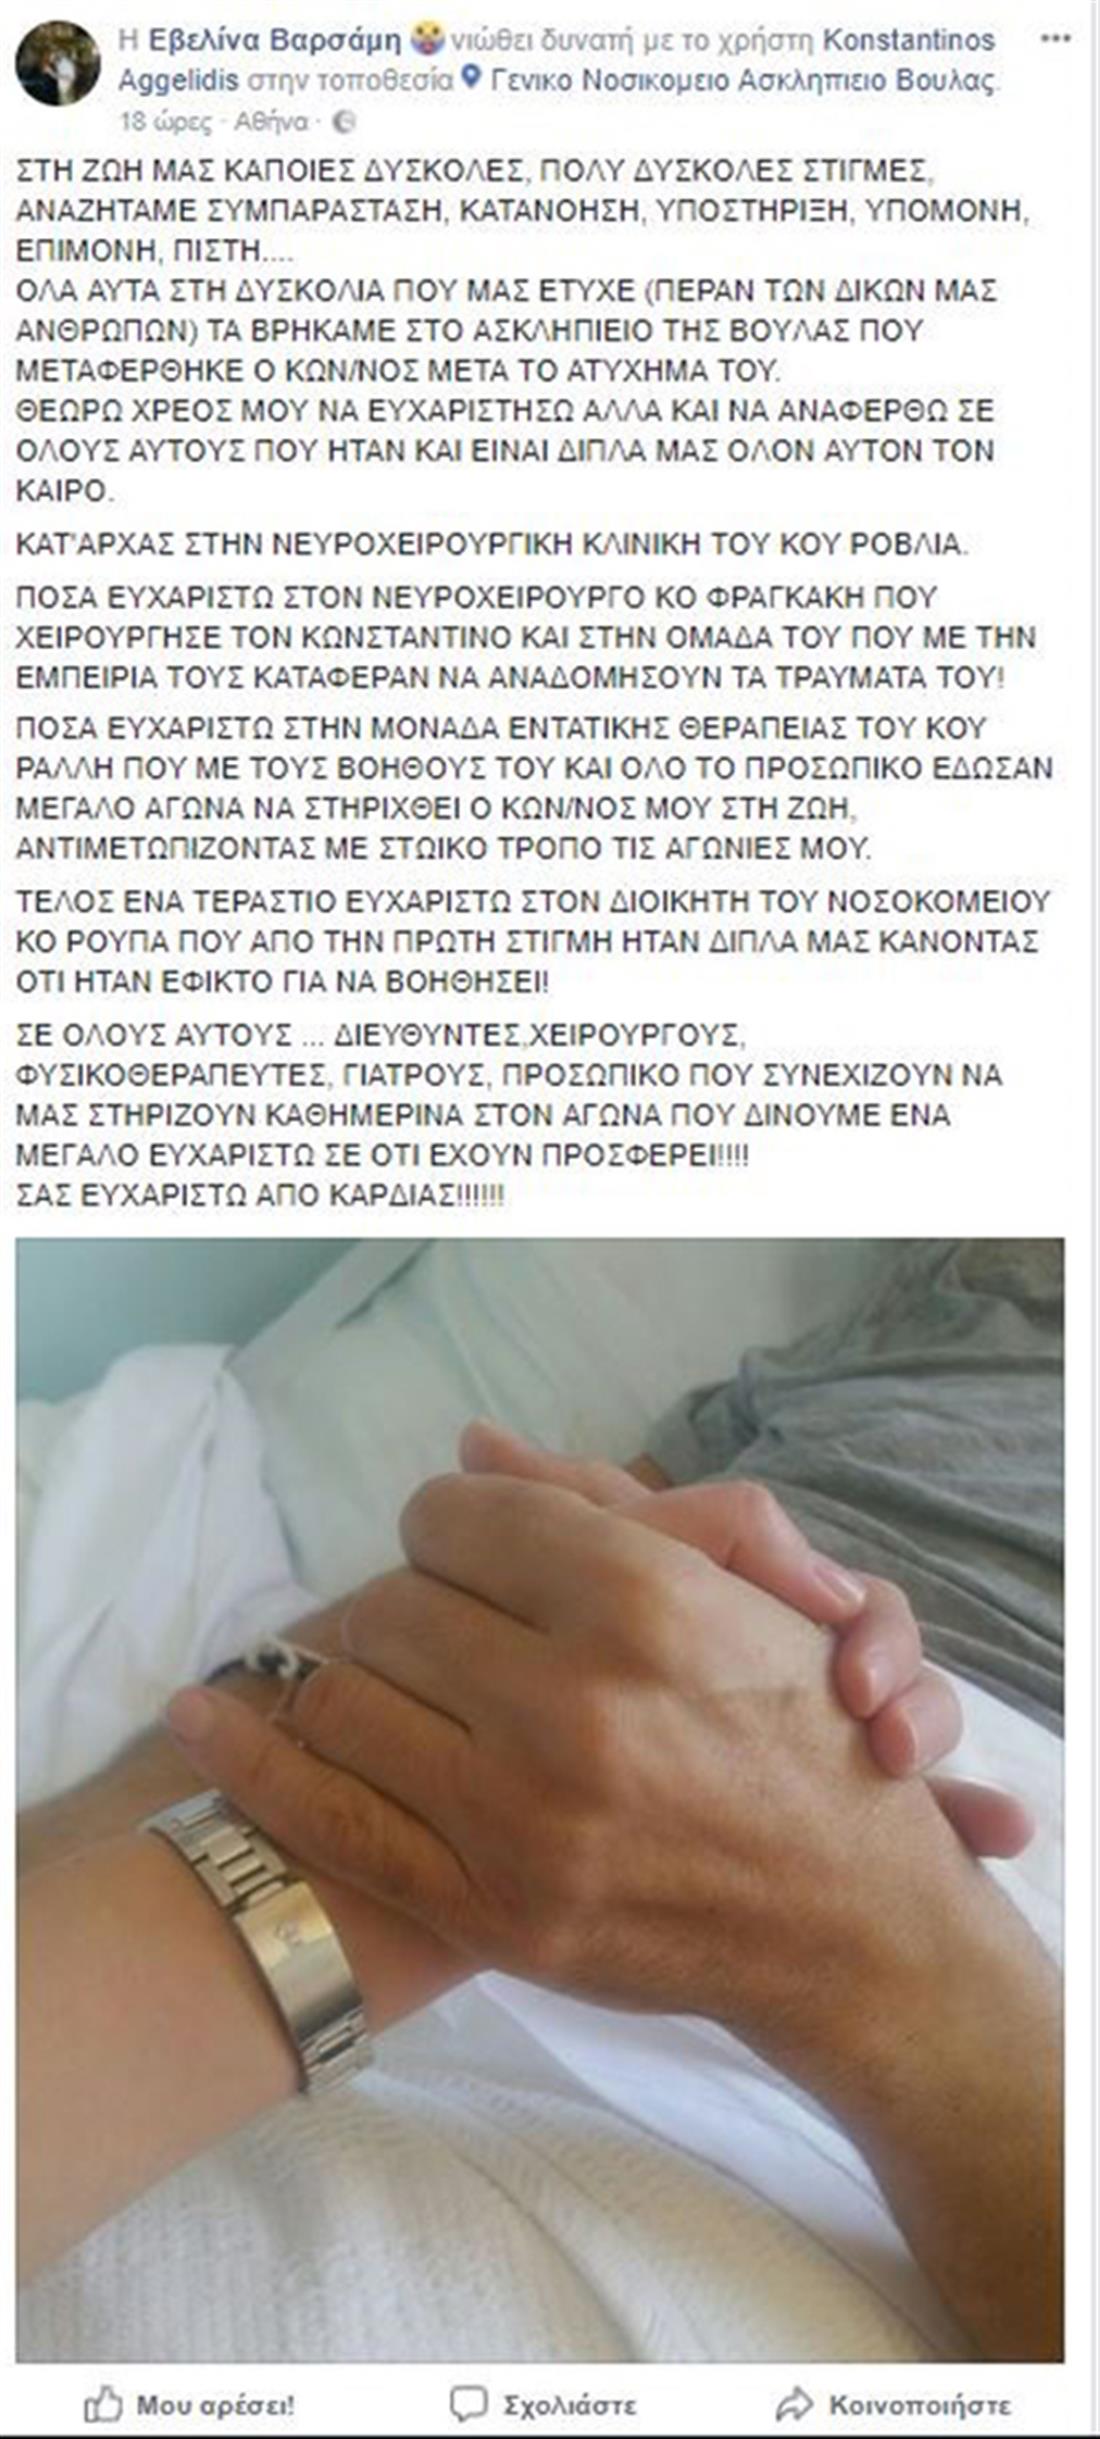 Εβελίνα Βαρσάμη - σύζυγος - Κωνσταντίνος Αγγελίδης - νοσοκομείο - ανάρτηση - facebook